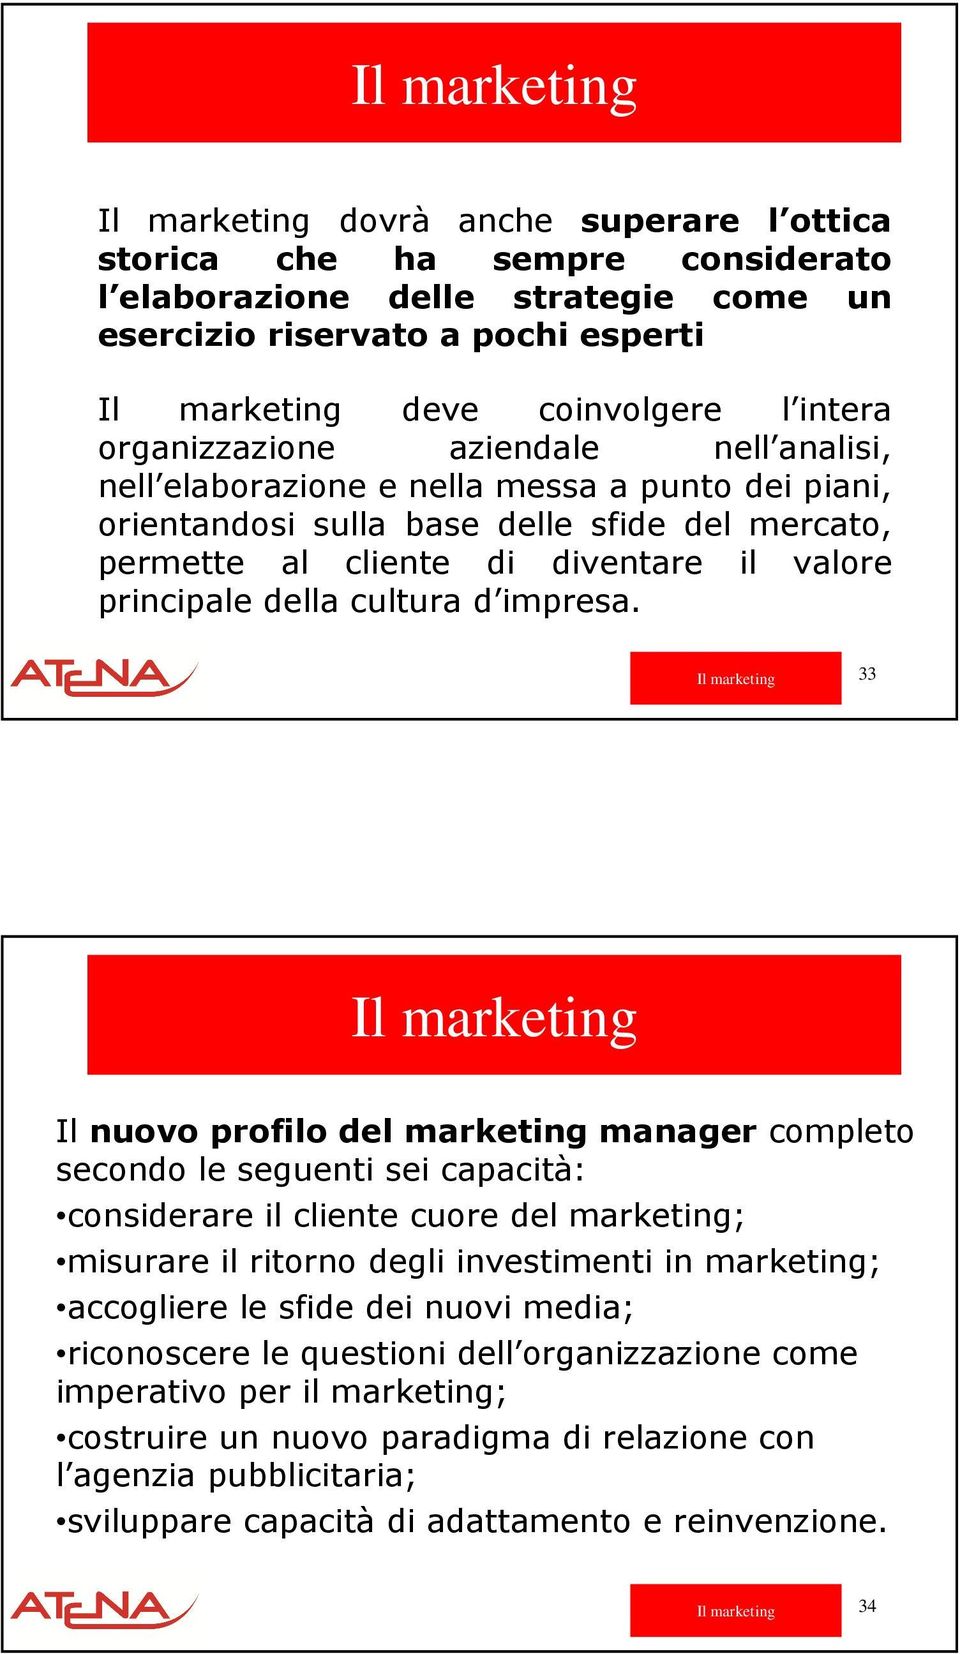 33 Il nuovo profilo del marketing manager completo secondo le seguenti sei capacità: considerare il cliente cuore del marketing; misurare il ritorno degli investimenti in marketing; accogliere le